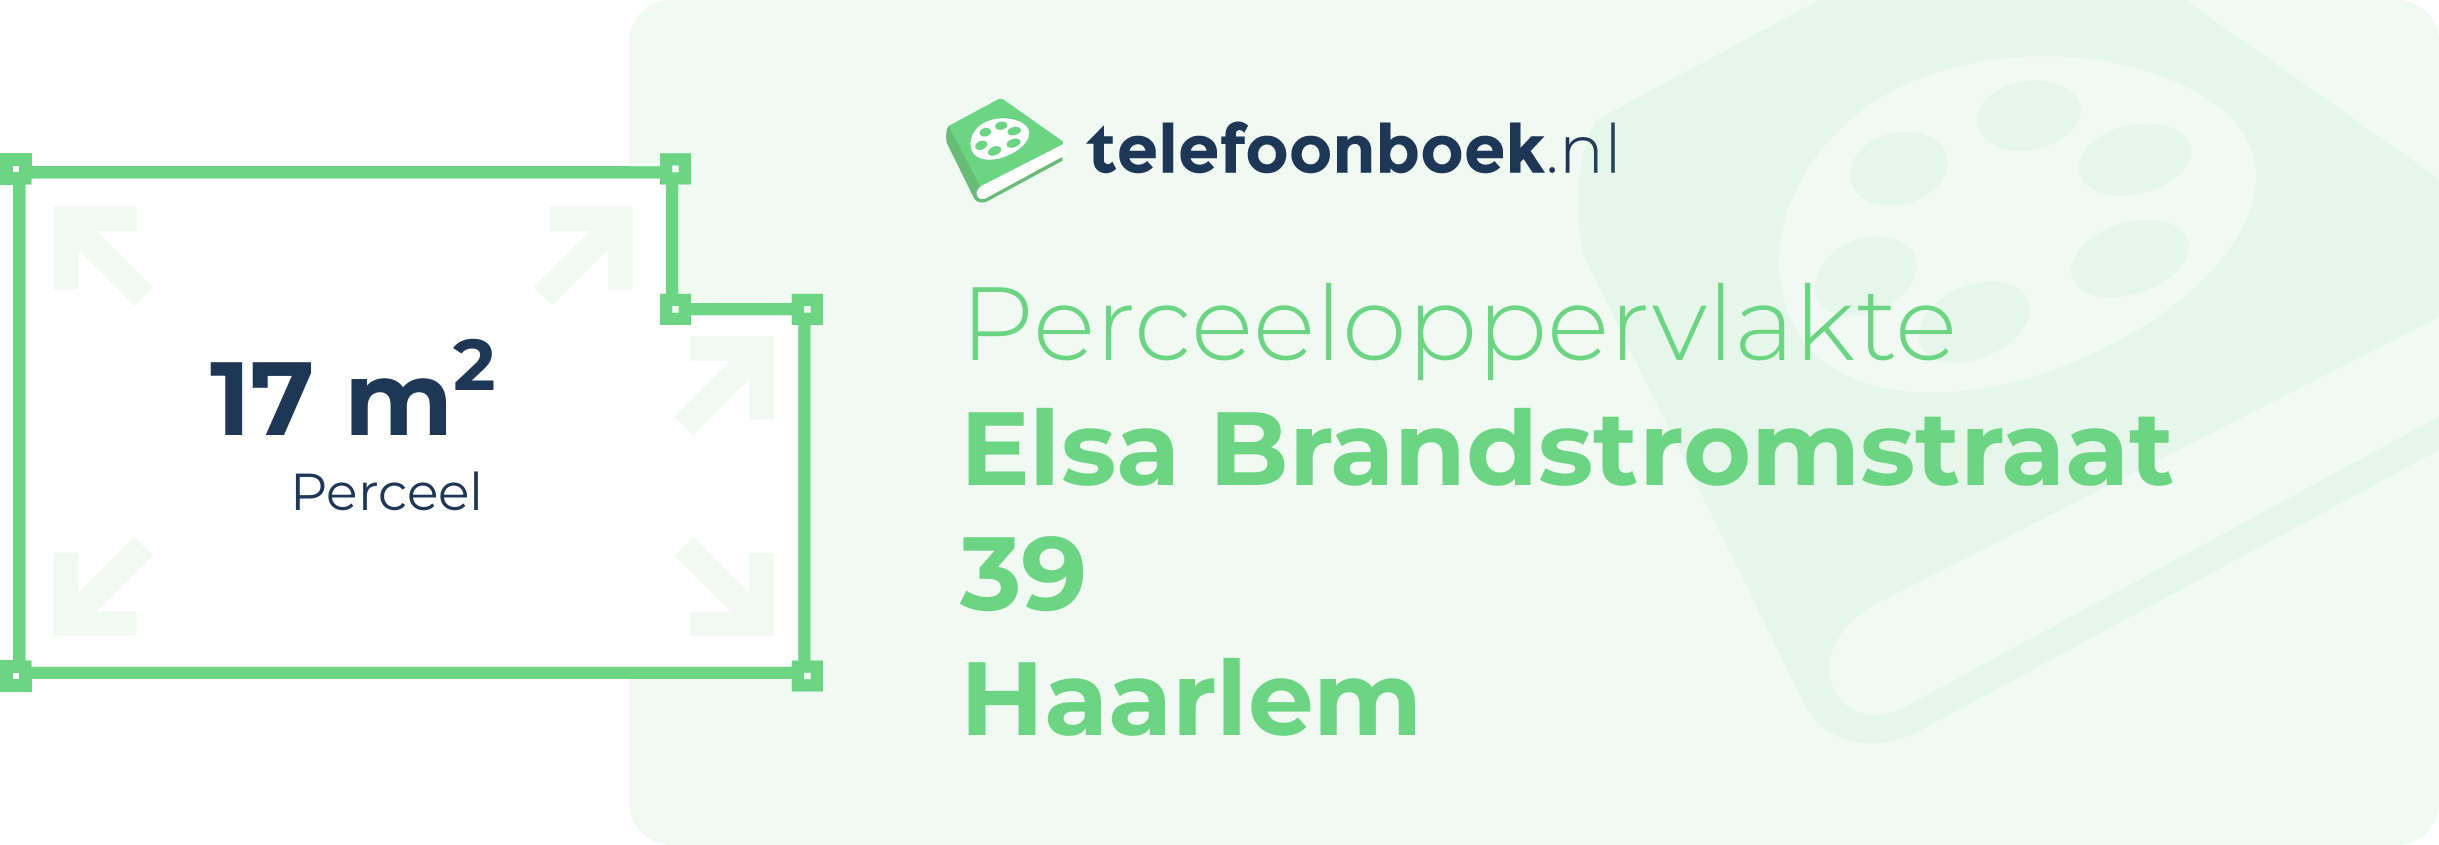 Perceeloppervlakte Elsa Brandstromstraat 39 Haarlem